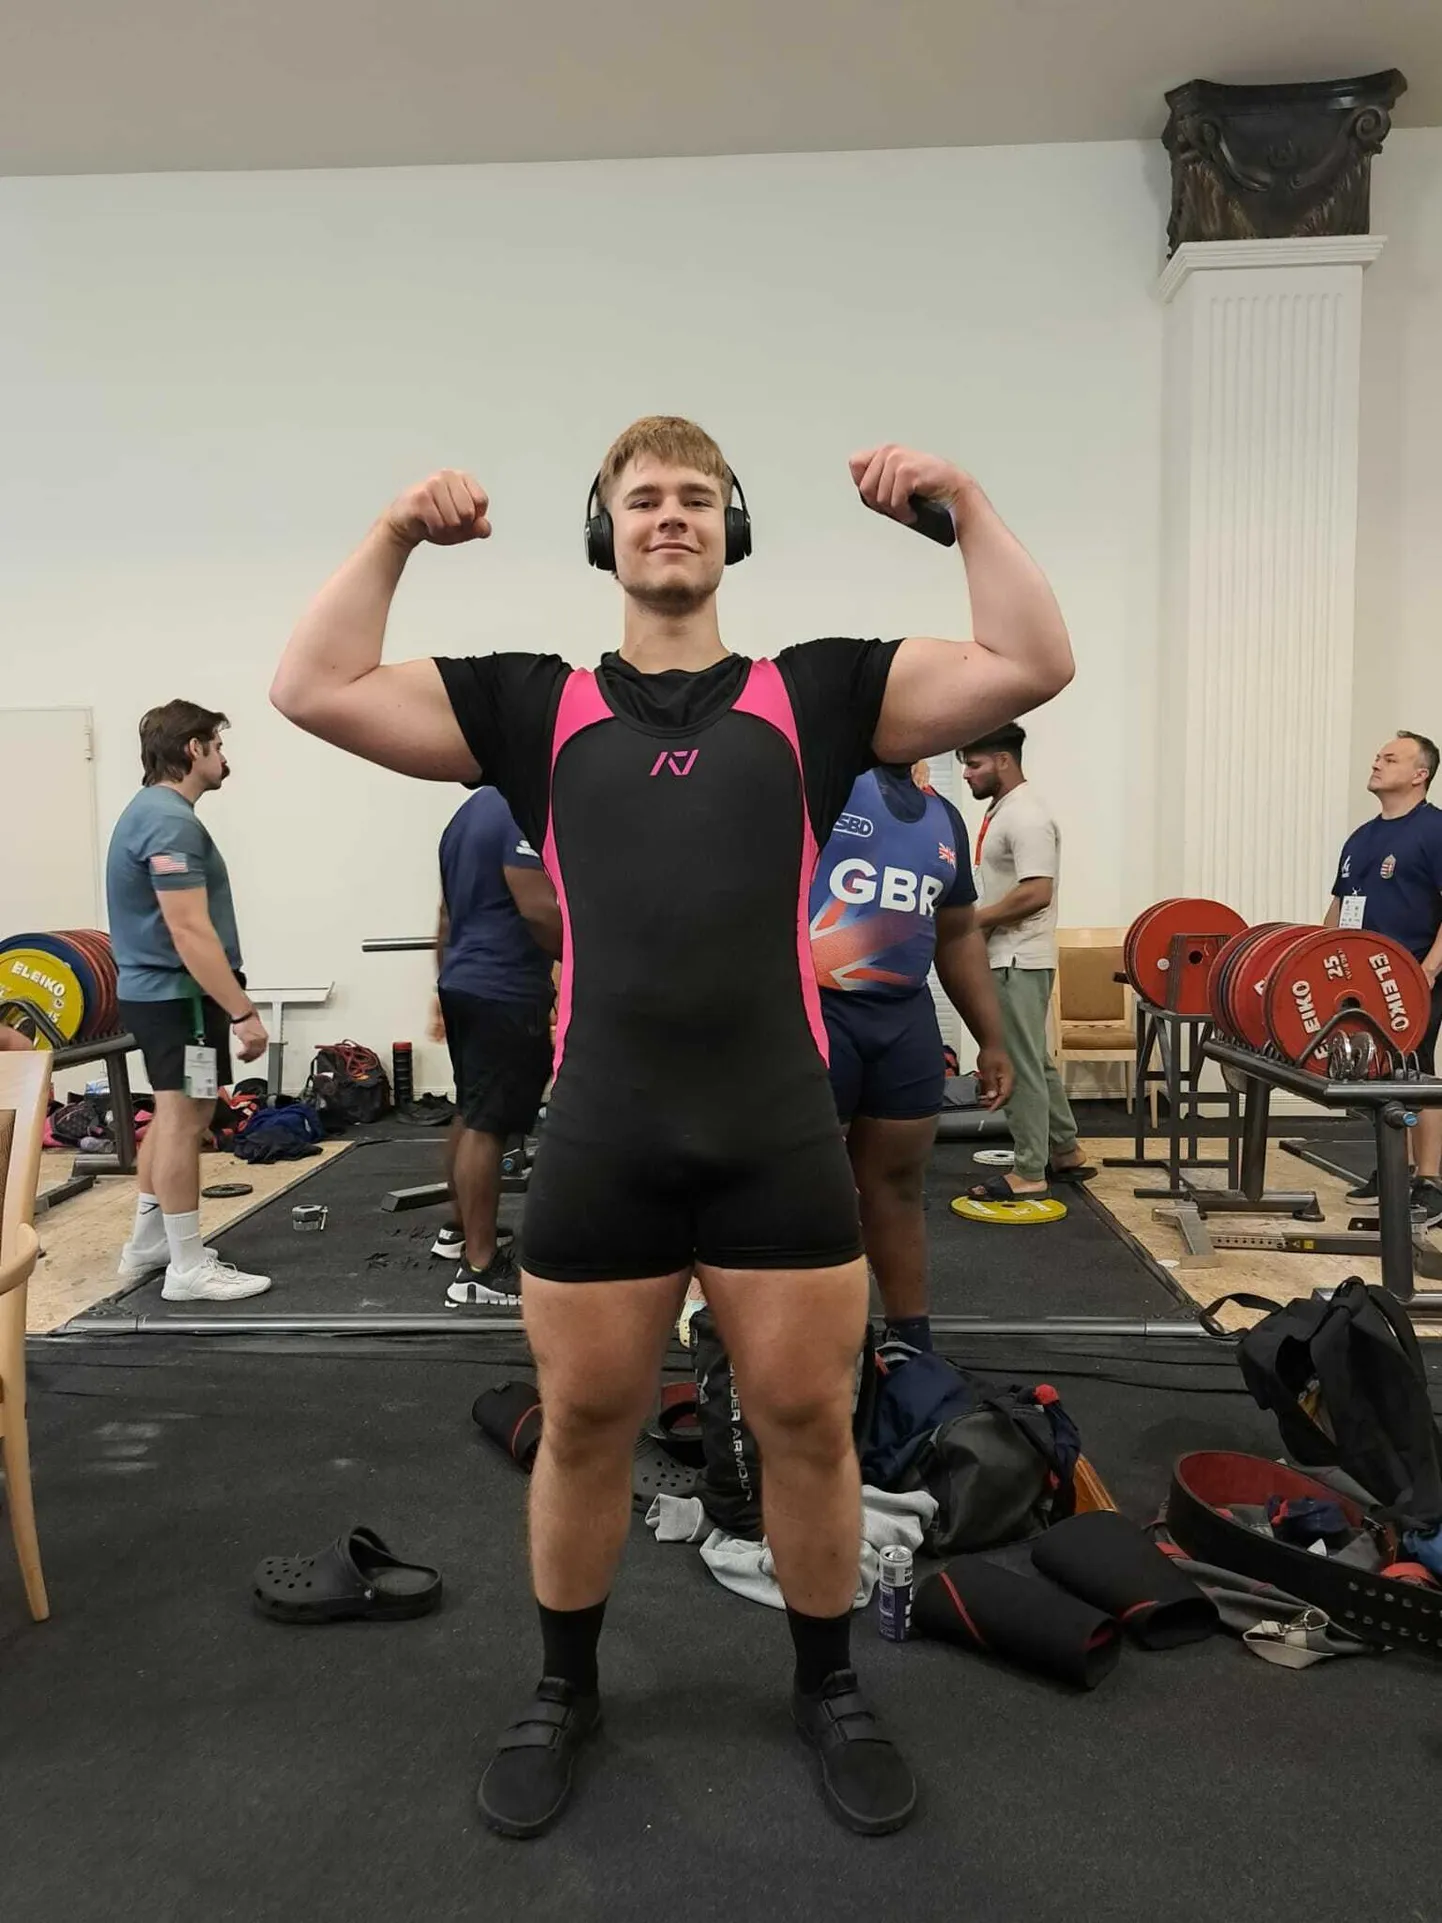 18aastane Reinhard Rebane võitis jõutõstmise MMil noorte arvestuses kaalukategoorias kuni 120 kilogrammi pronksmedali.